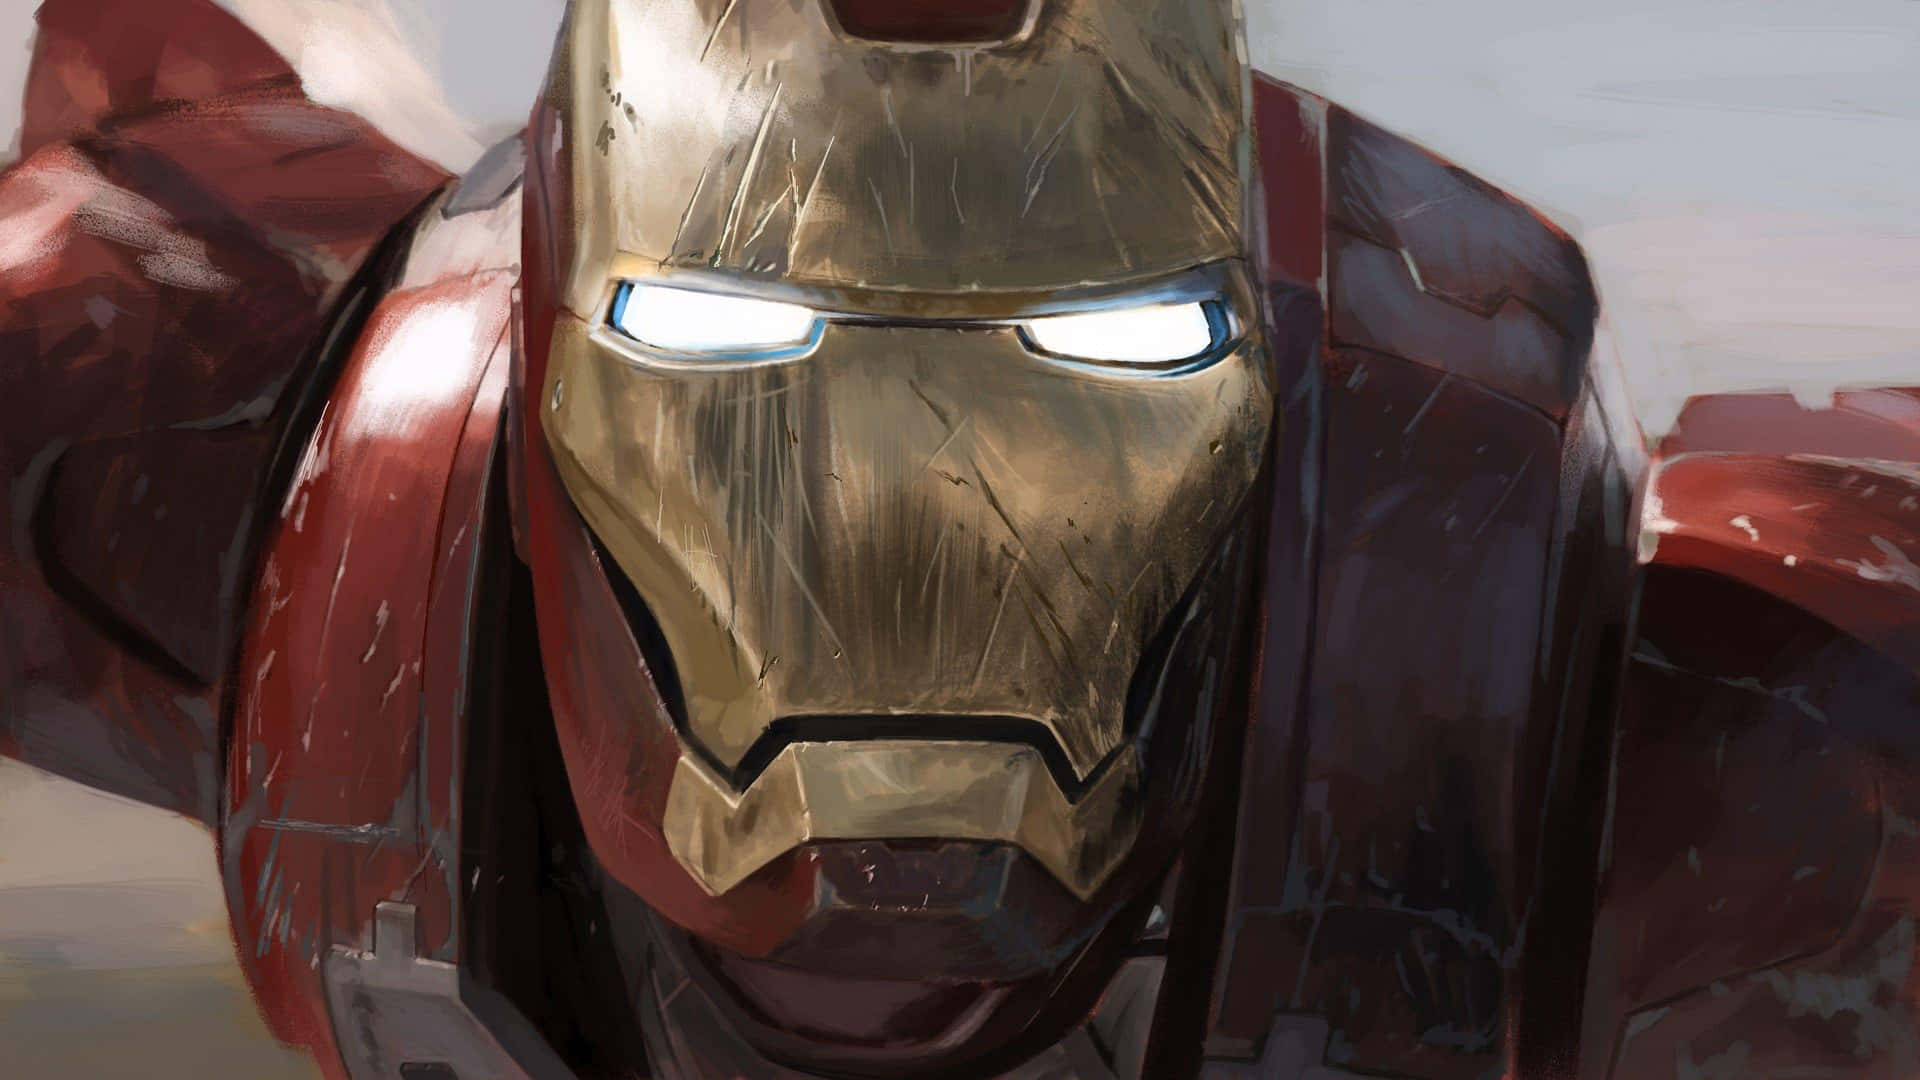 Tony Stark's transformation fra milliardær til Iron Man vises i dette grafiske tapet. Wallpaper